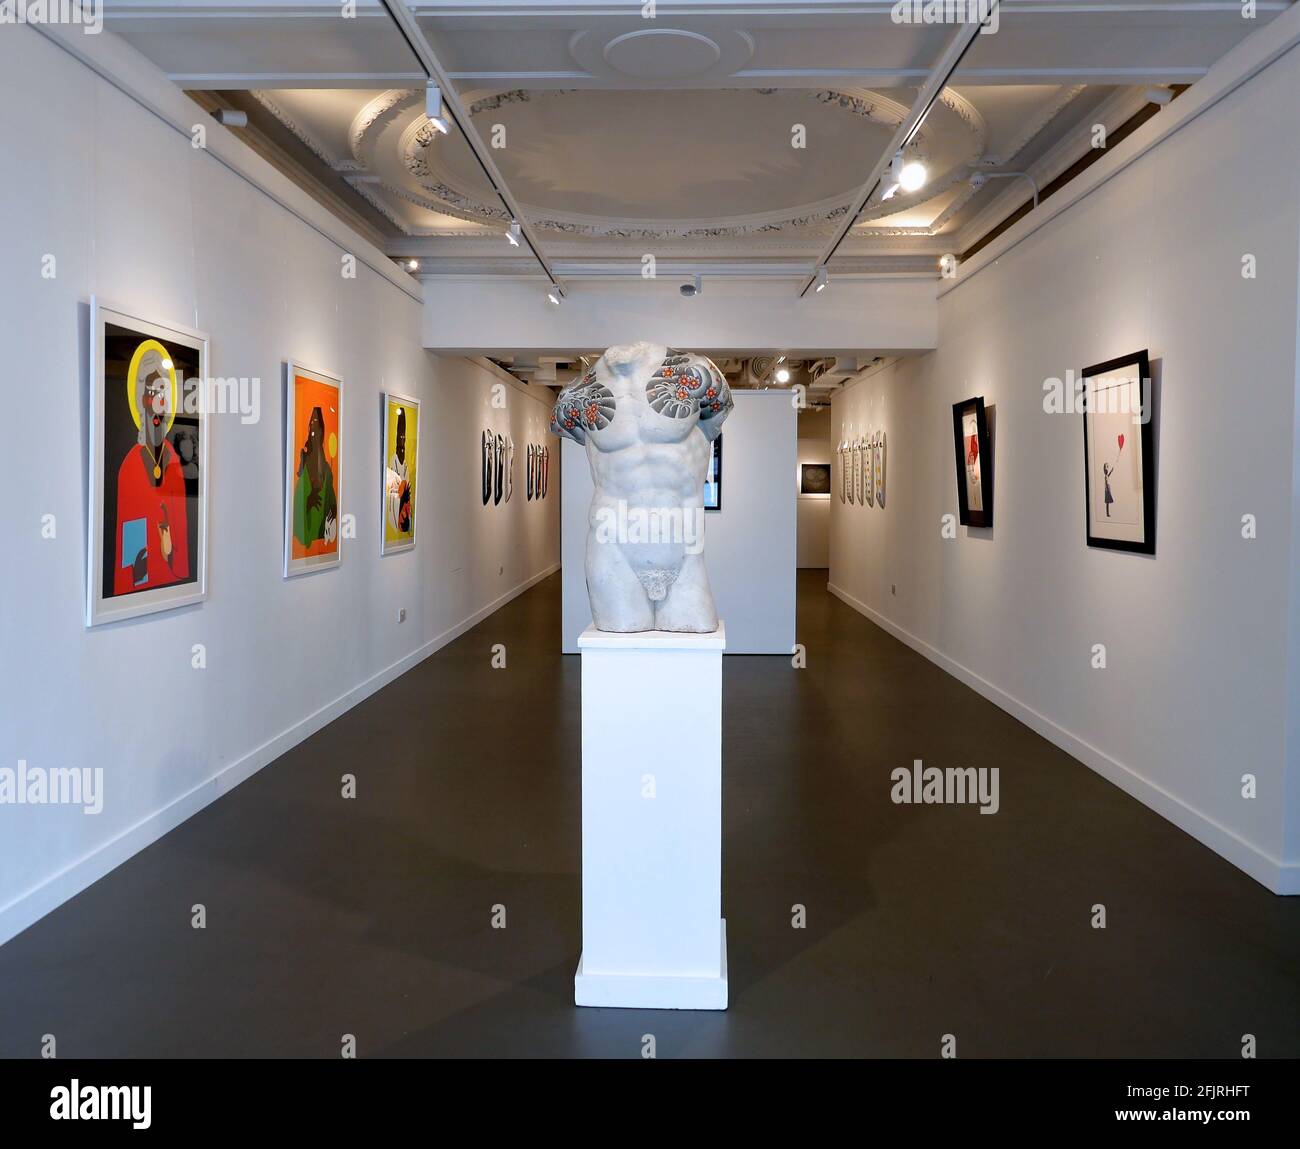 HOFA Gallery (Casa de Bellas Artes) se especializa en arte contemporáneo de  artistas internacionales establecidos y emergentes. HOFA está decidida a  ofrecer una multitud de disciplinas artísticas con un enfoque de intención